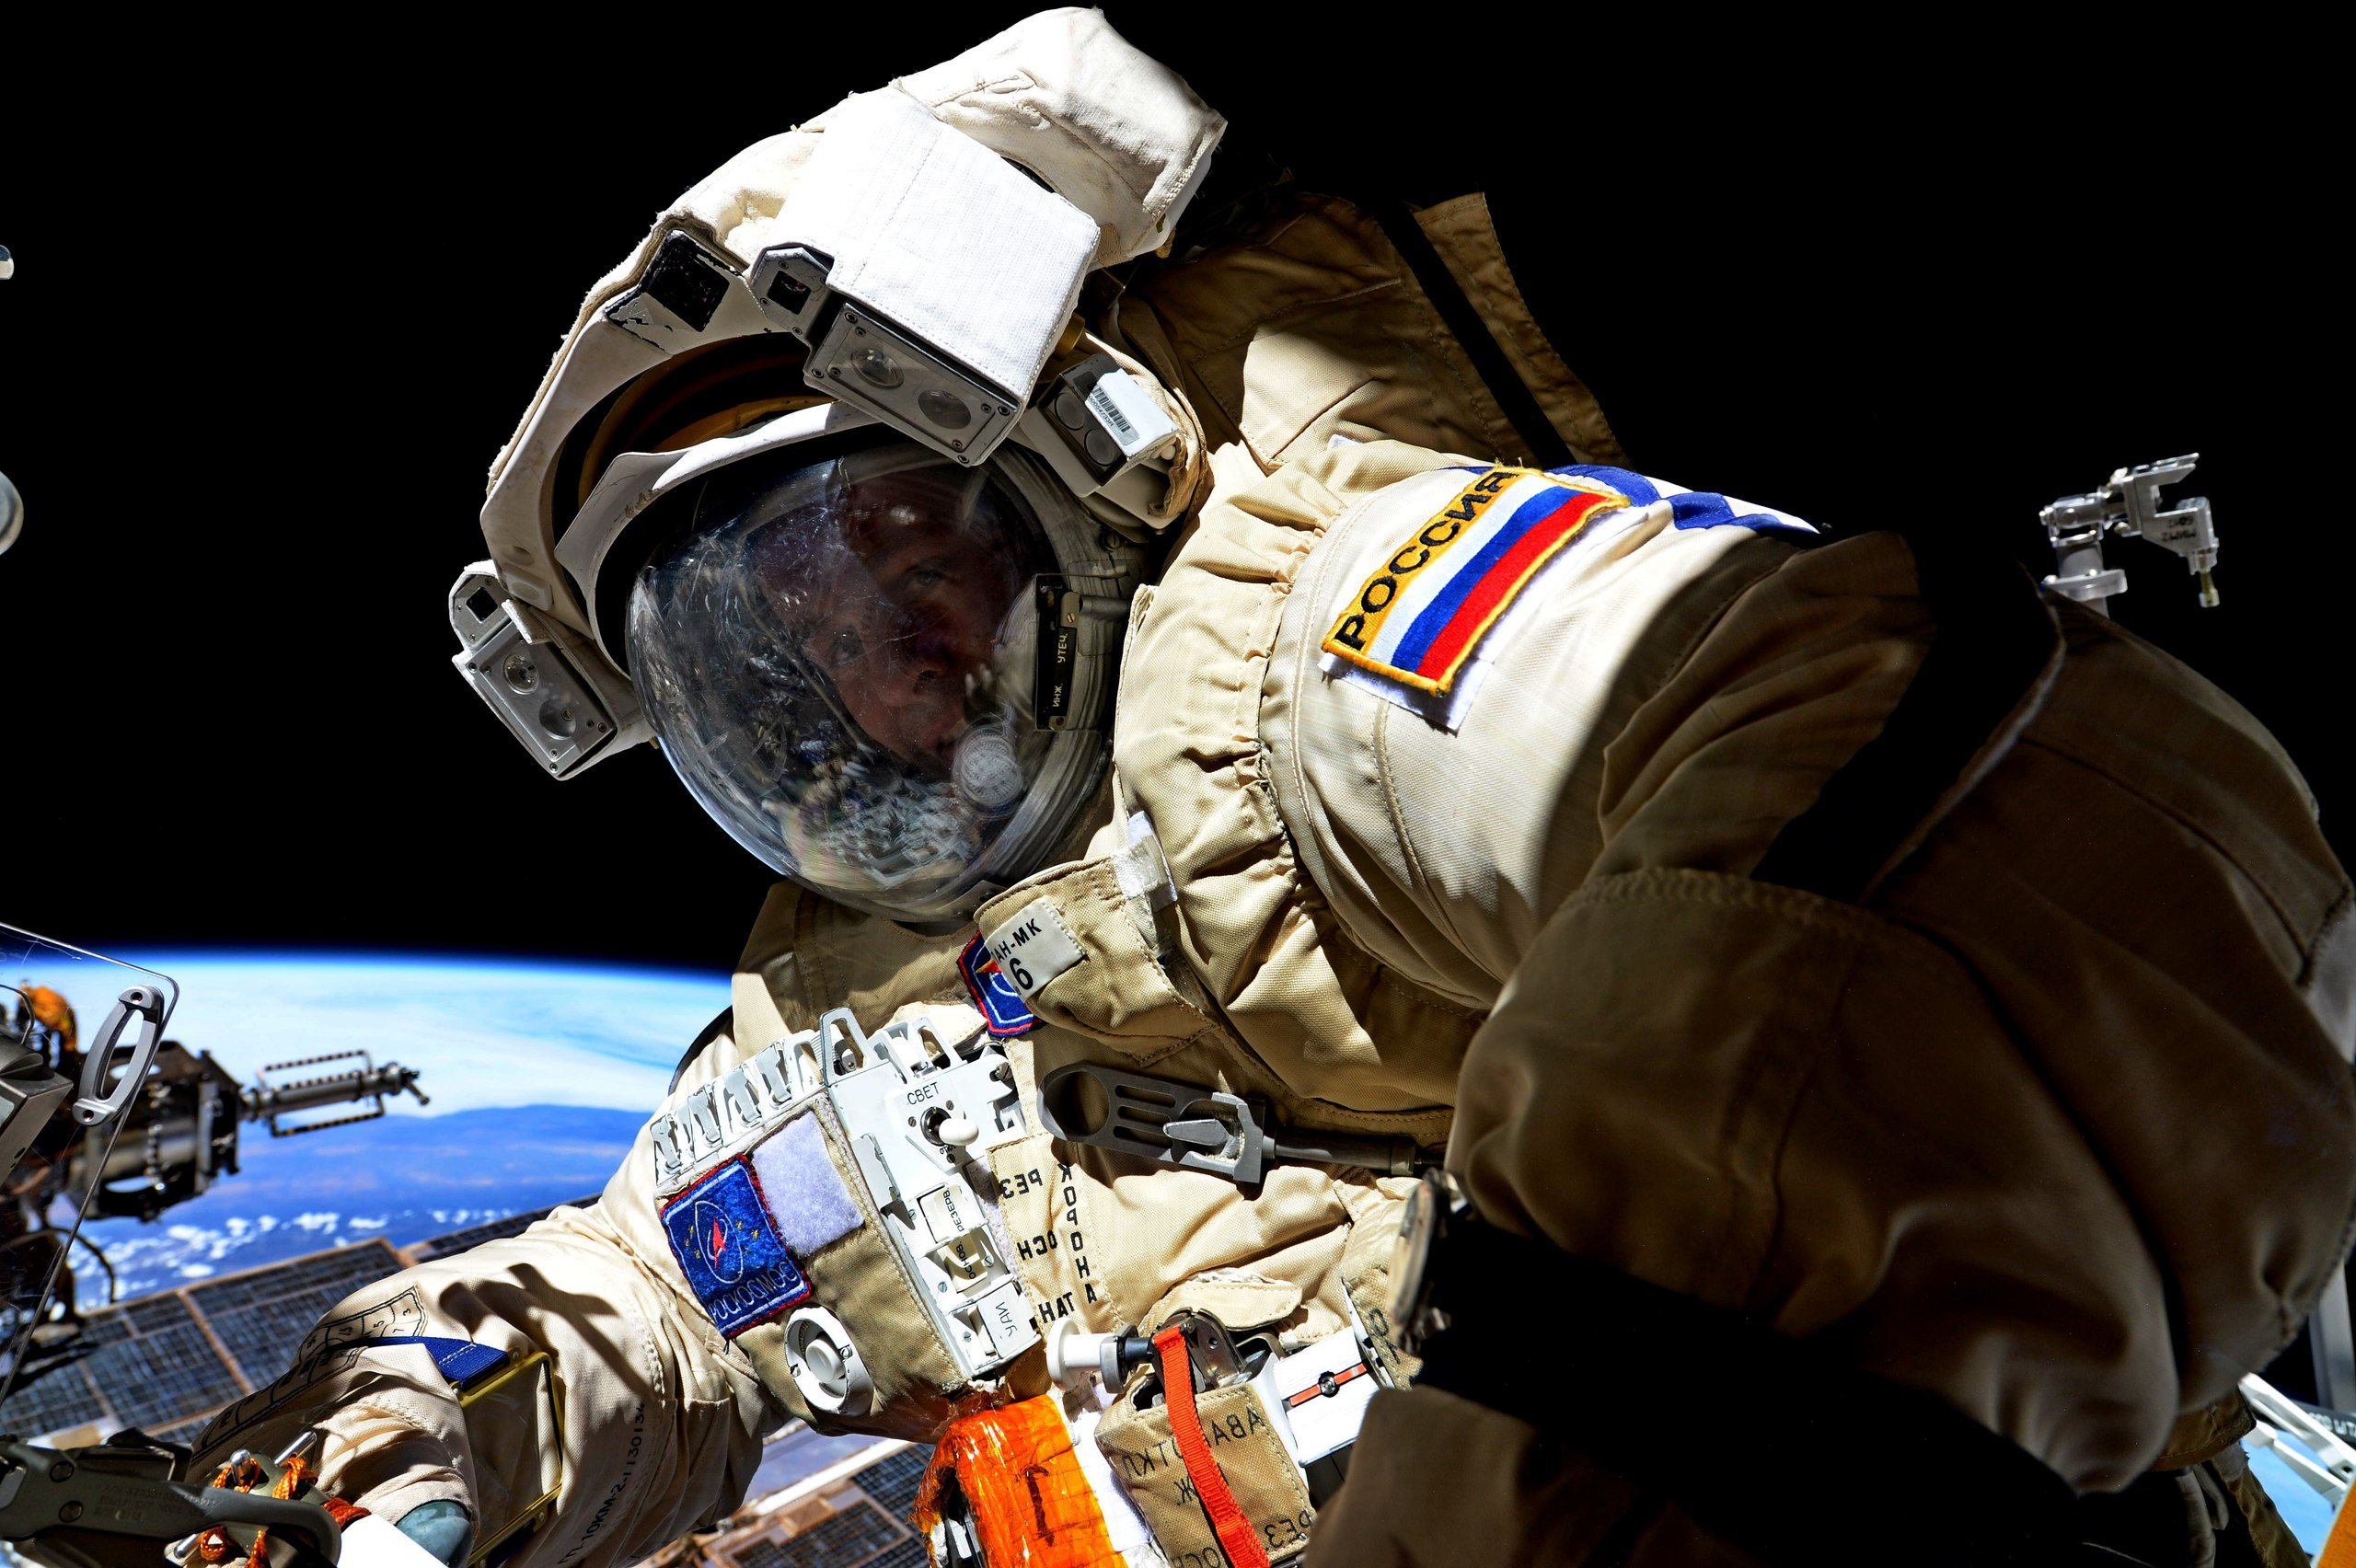 Госдума планирует поднять зарплату космонавтам до 500 тысяч рублей